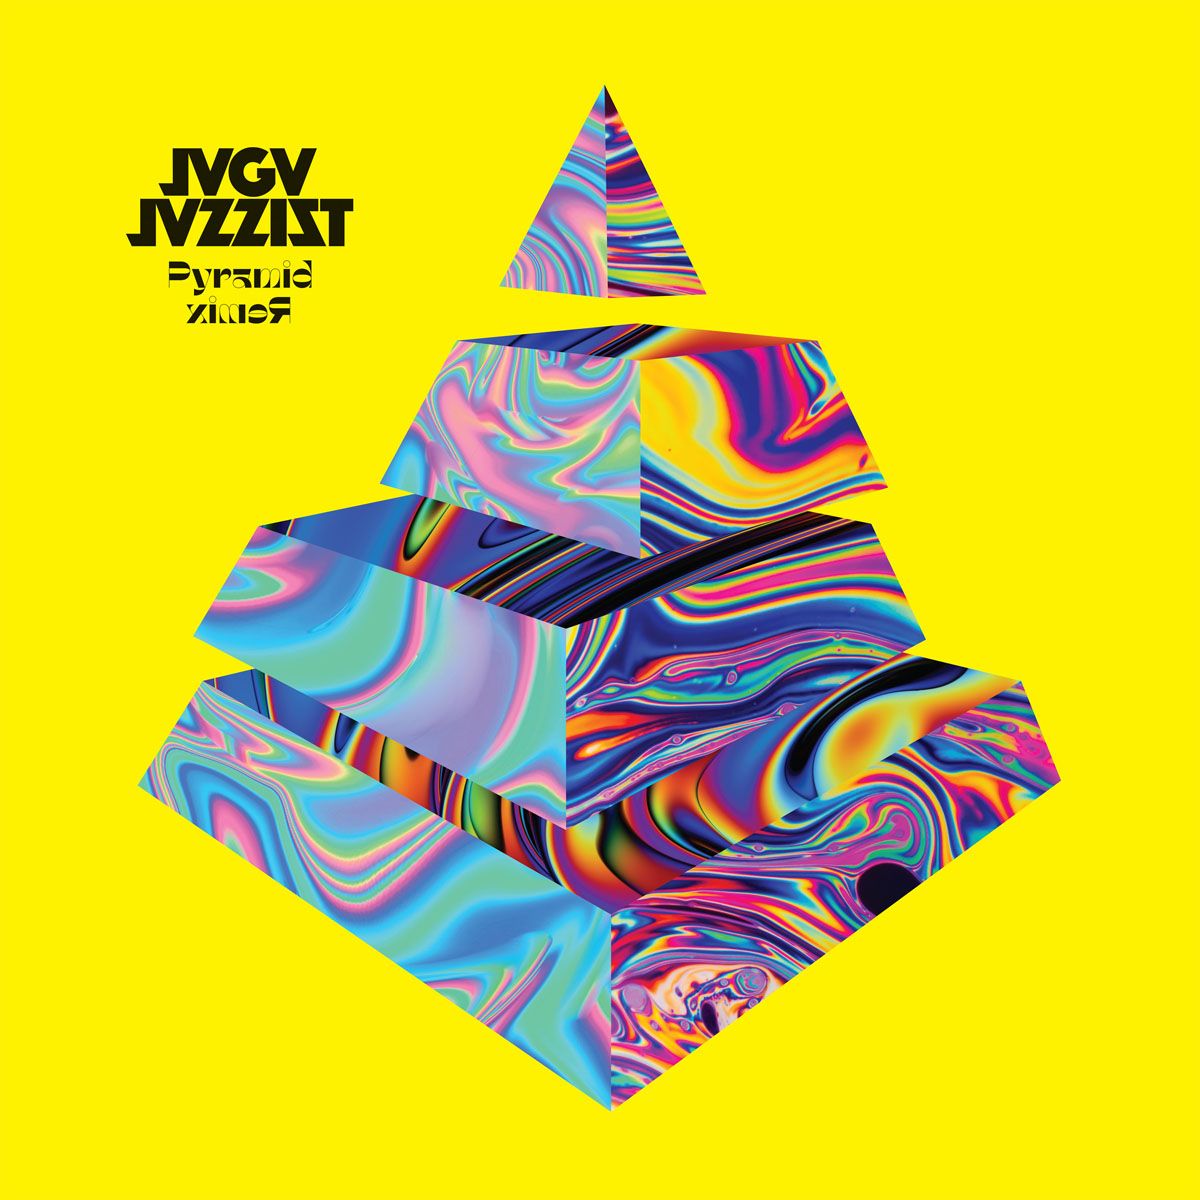 Jaga Jazzist - Pyramid Remix - 2LP